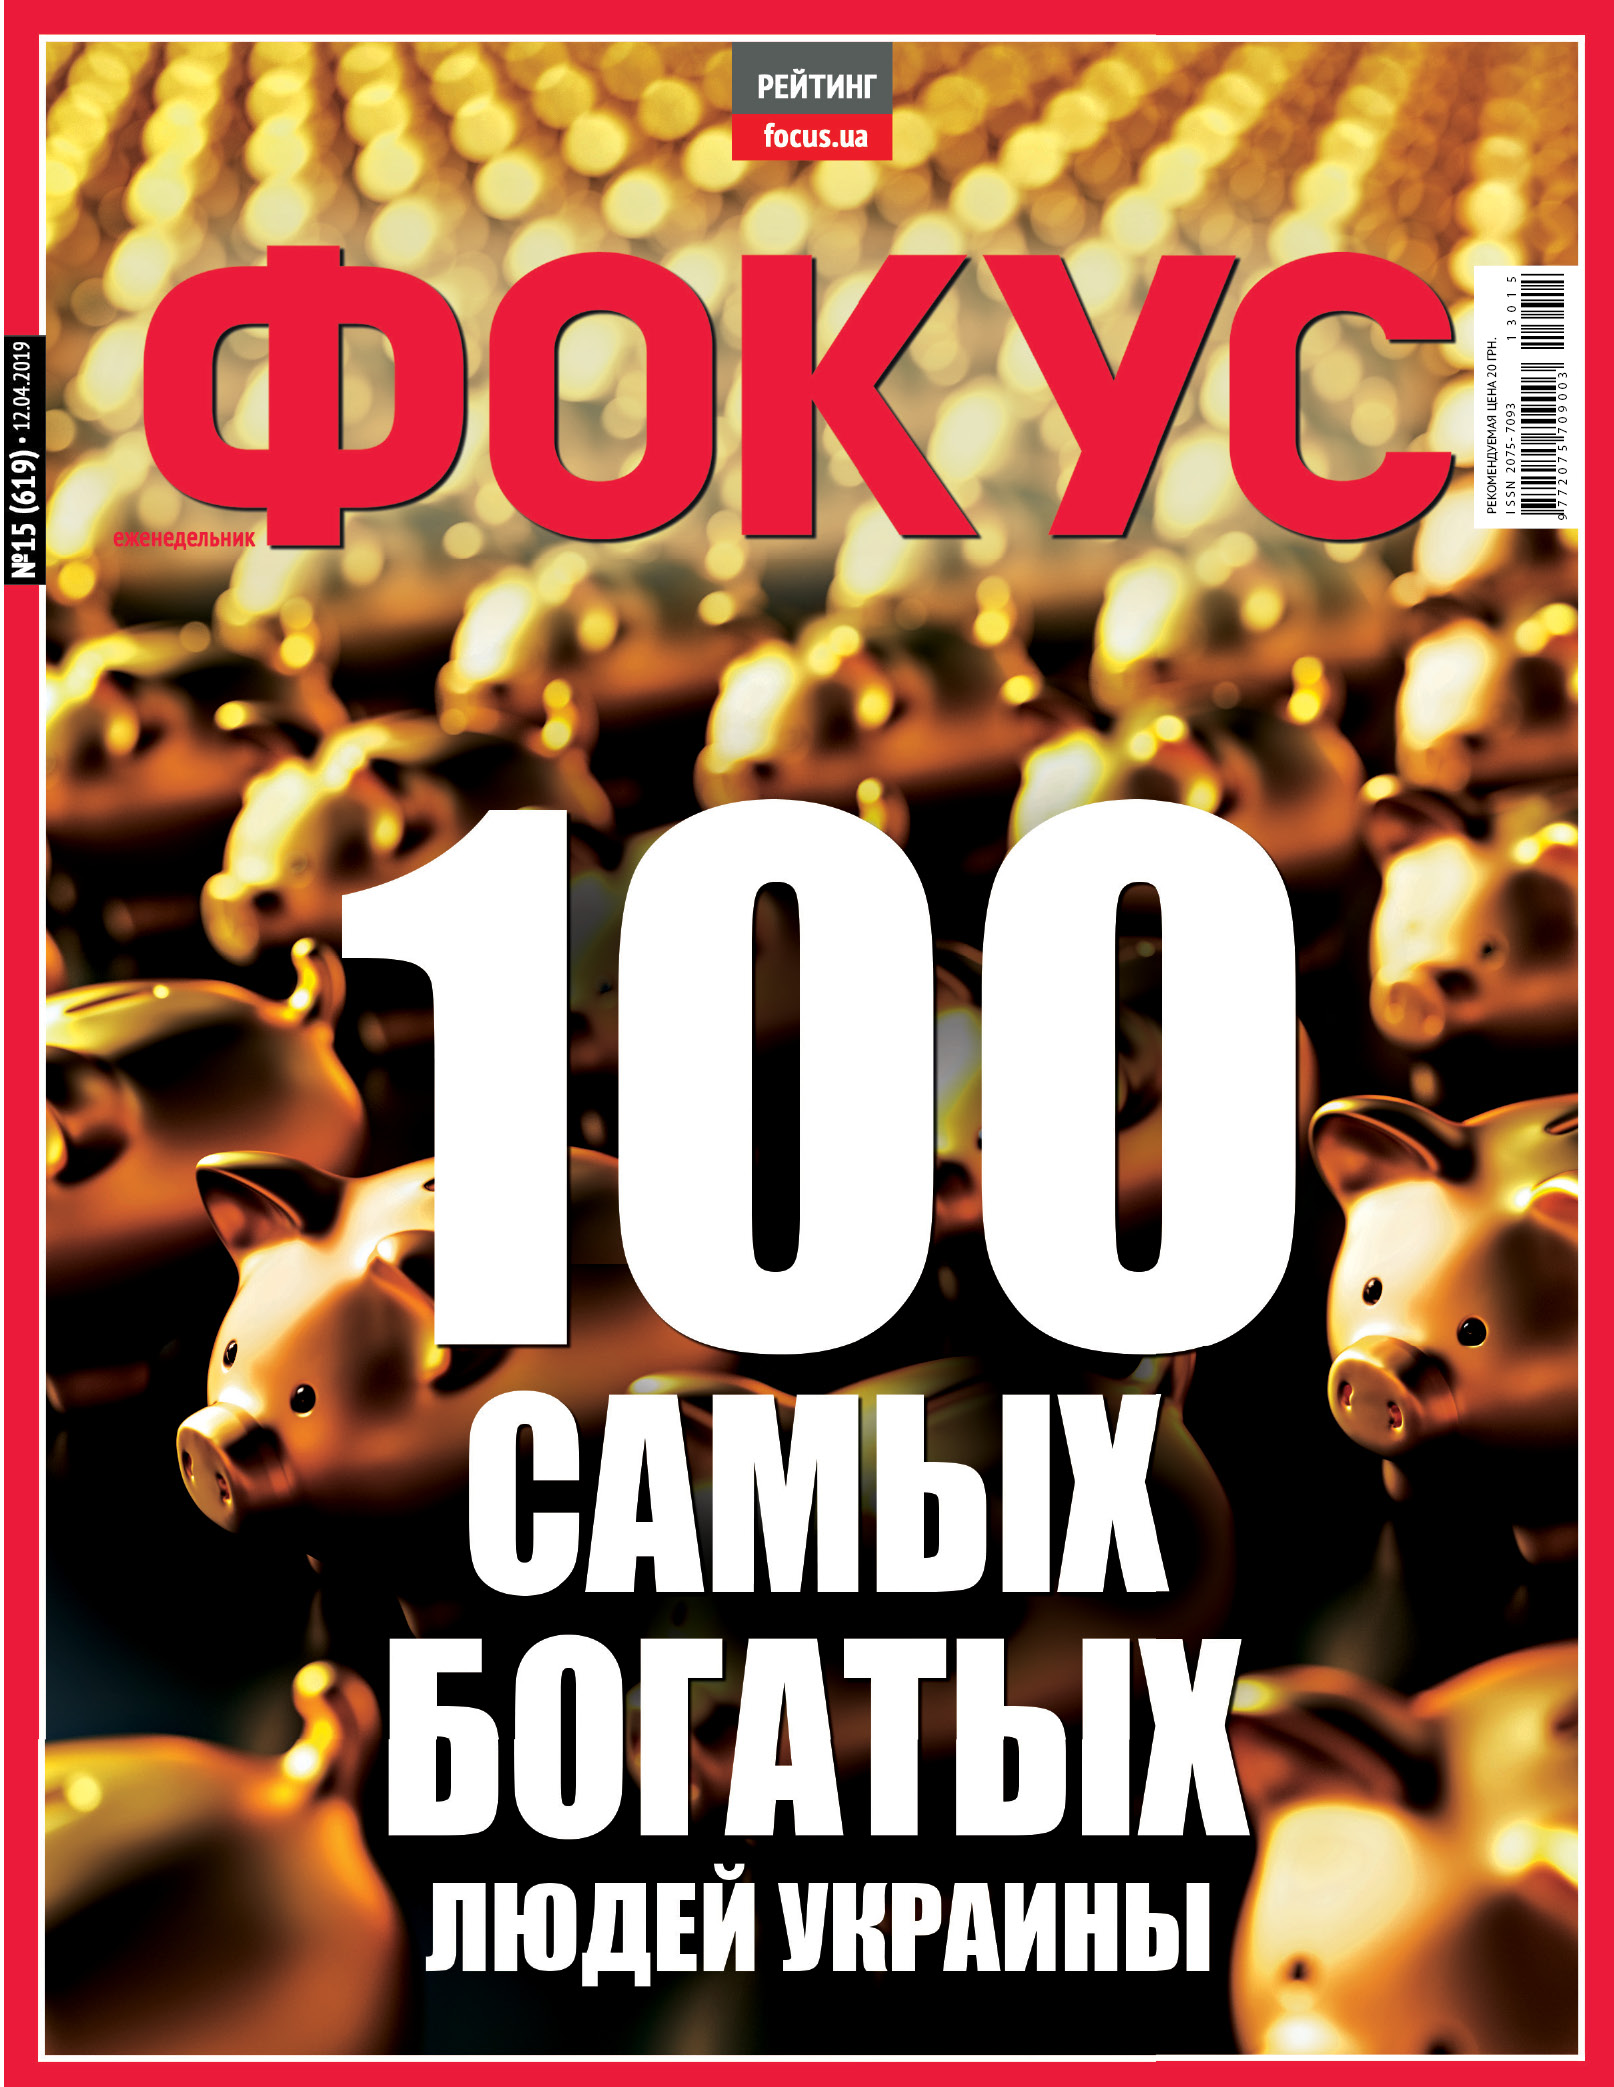 Запорожский нардеп на 20 месте в списке 100 самых богатых людей Украины